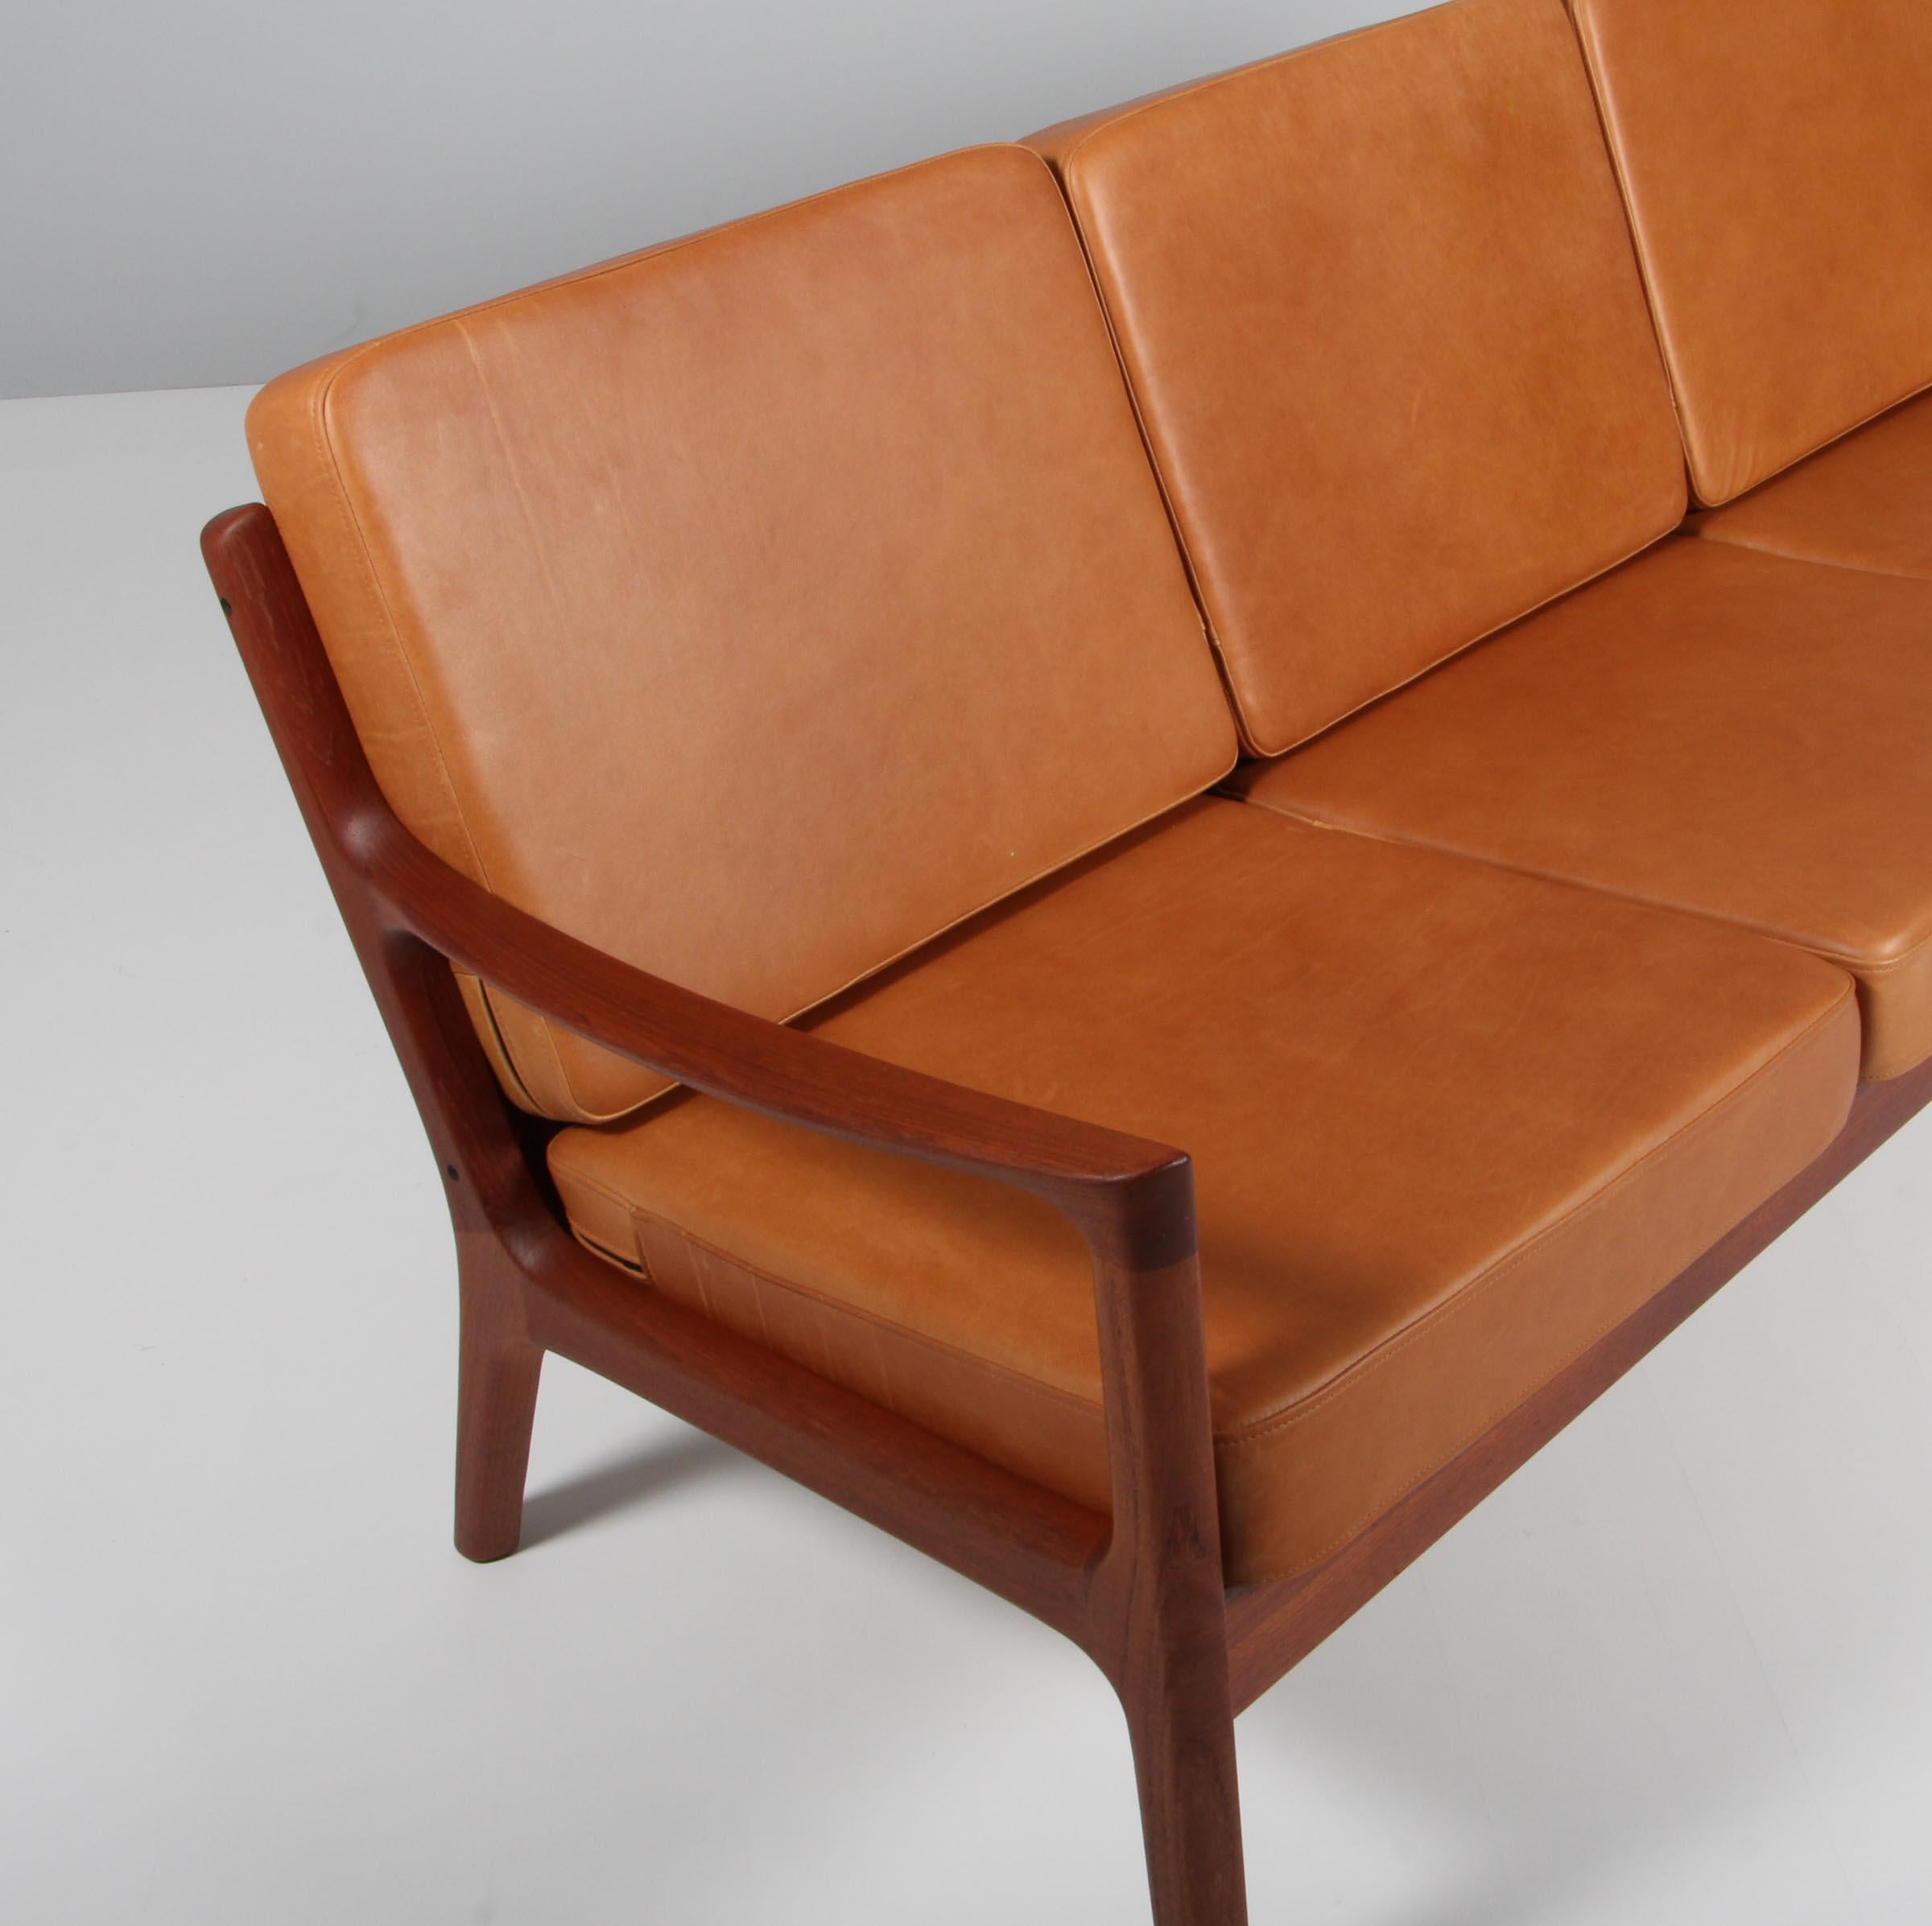 Ole Wanscher Dreisitzer-Sofa, neu gepolstert mit Vintage-Anilinleder.

Hergestellt aus massivem Teakholz.

Modell Senator, hergestellt von Cado.